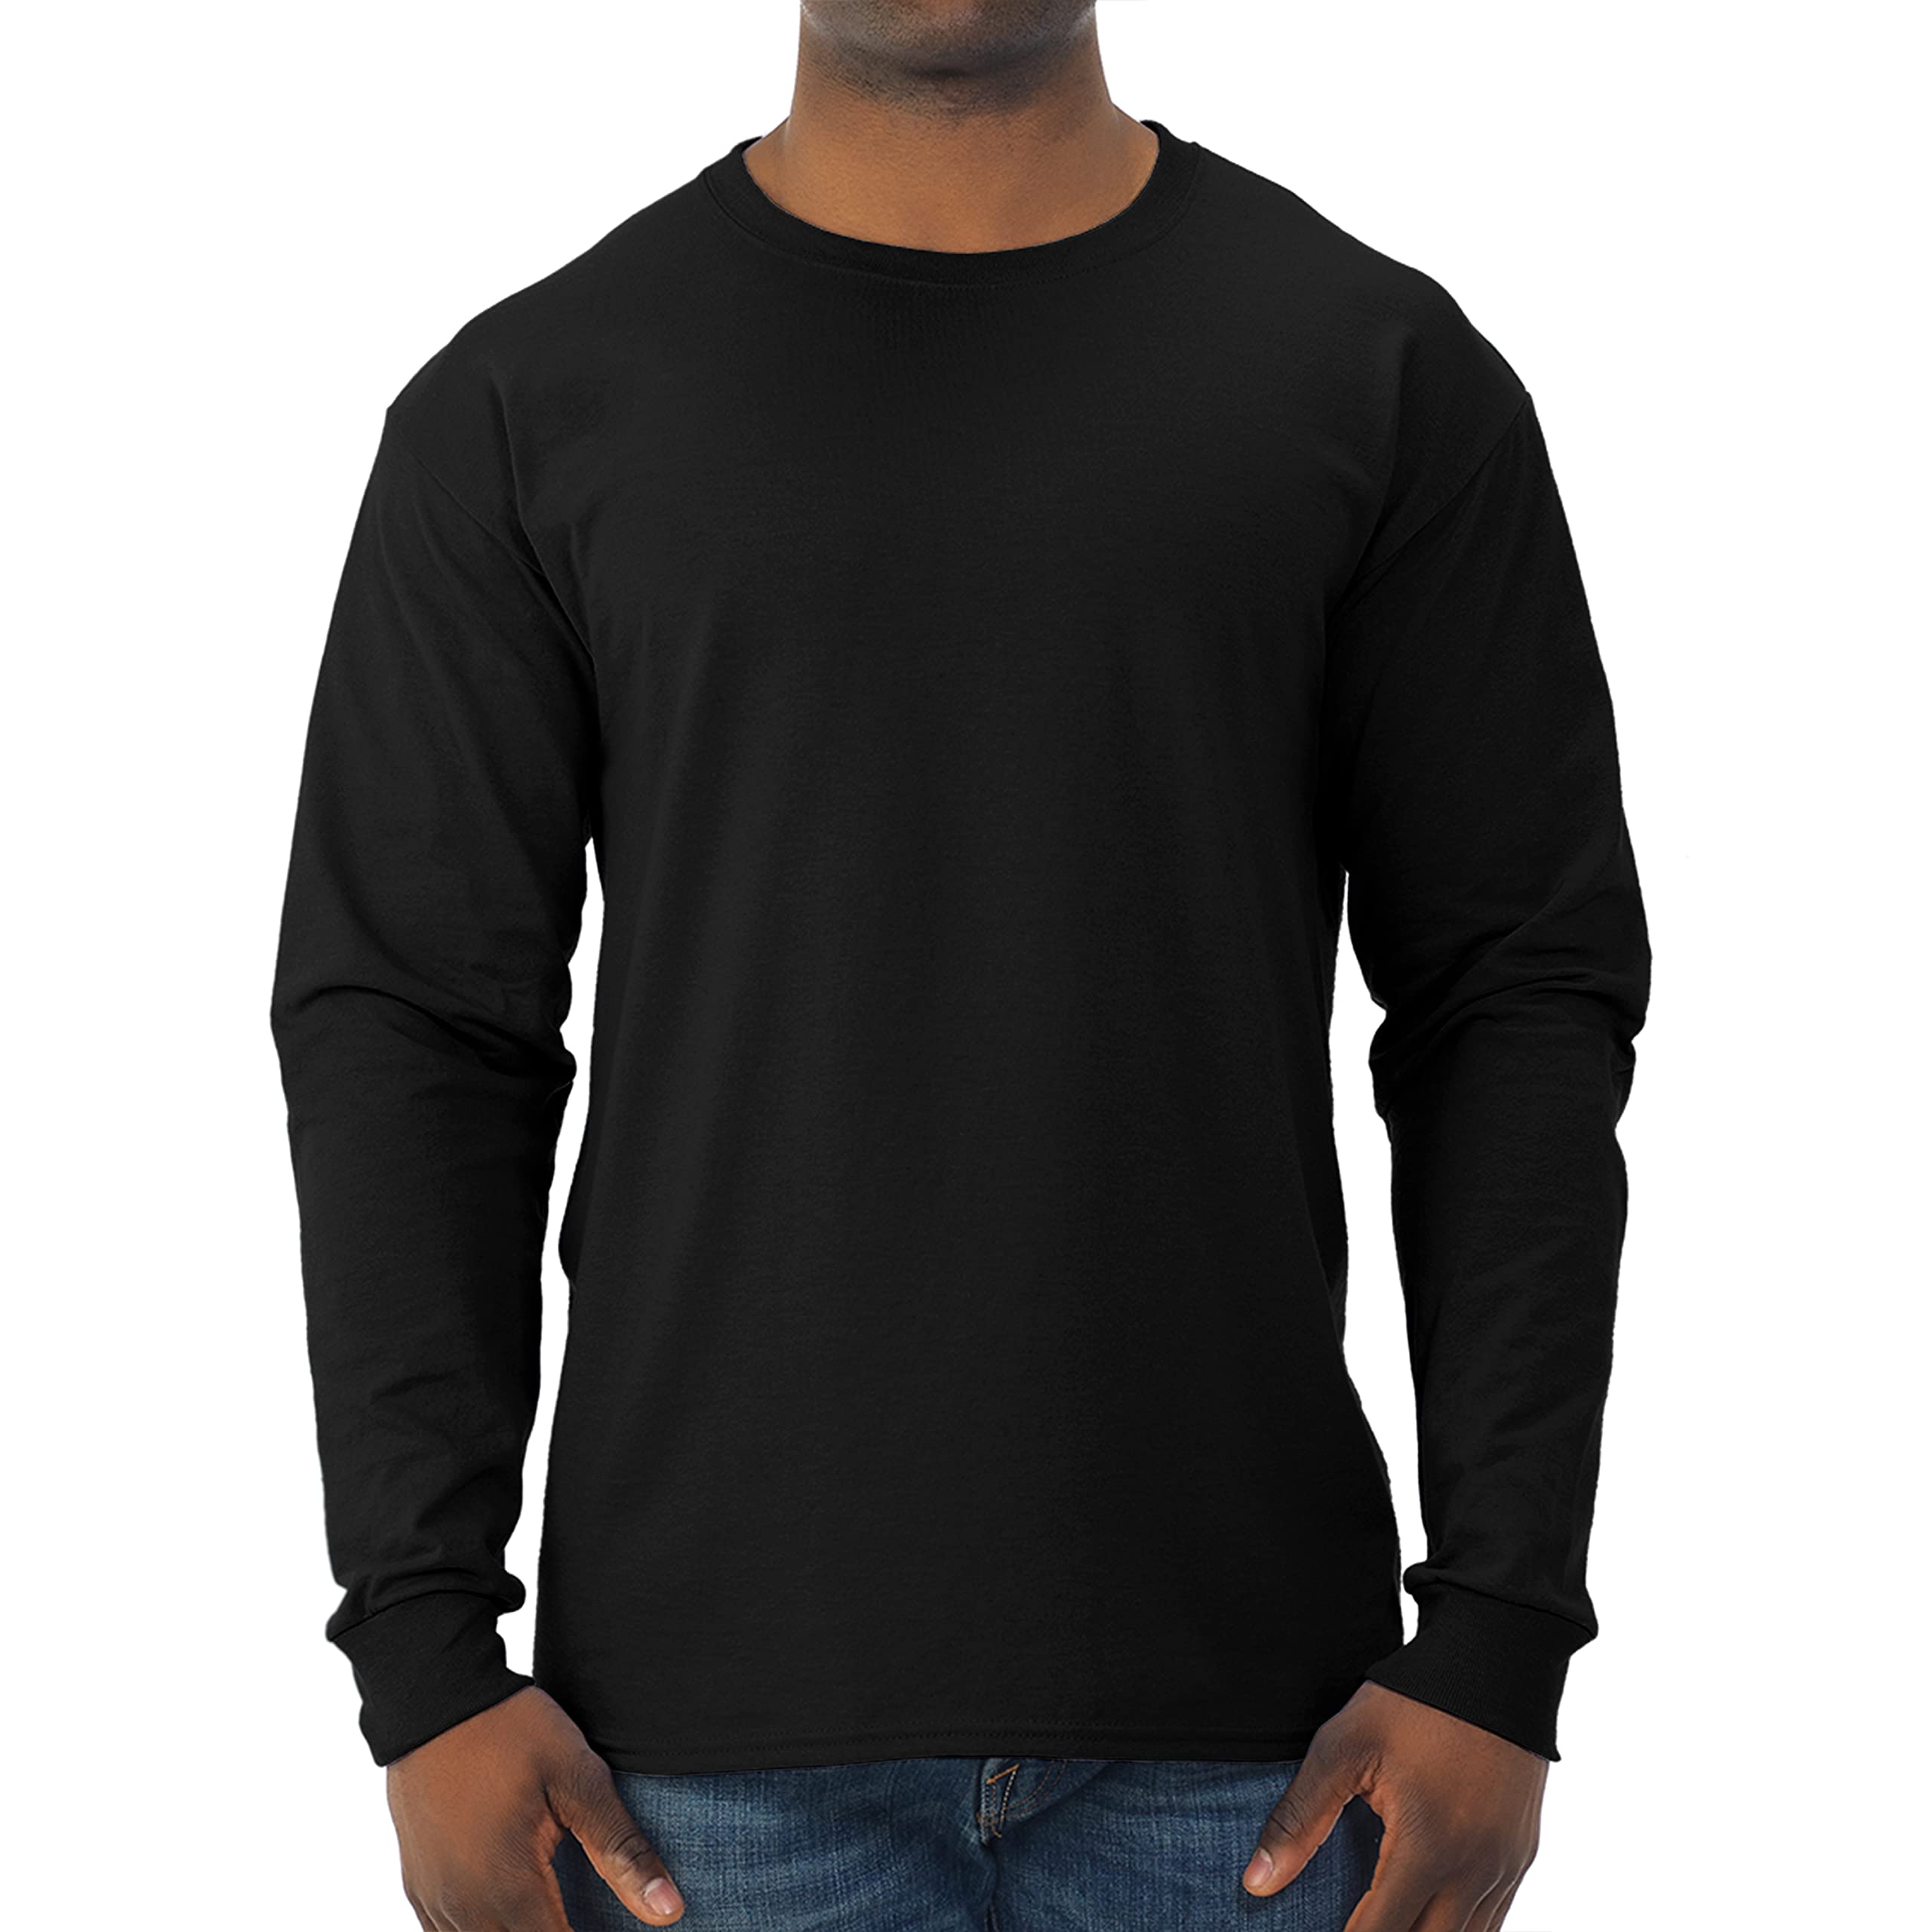 Jerzees Men's Dri-Power Long Sleeve T-Shirt